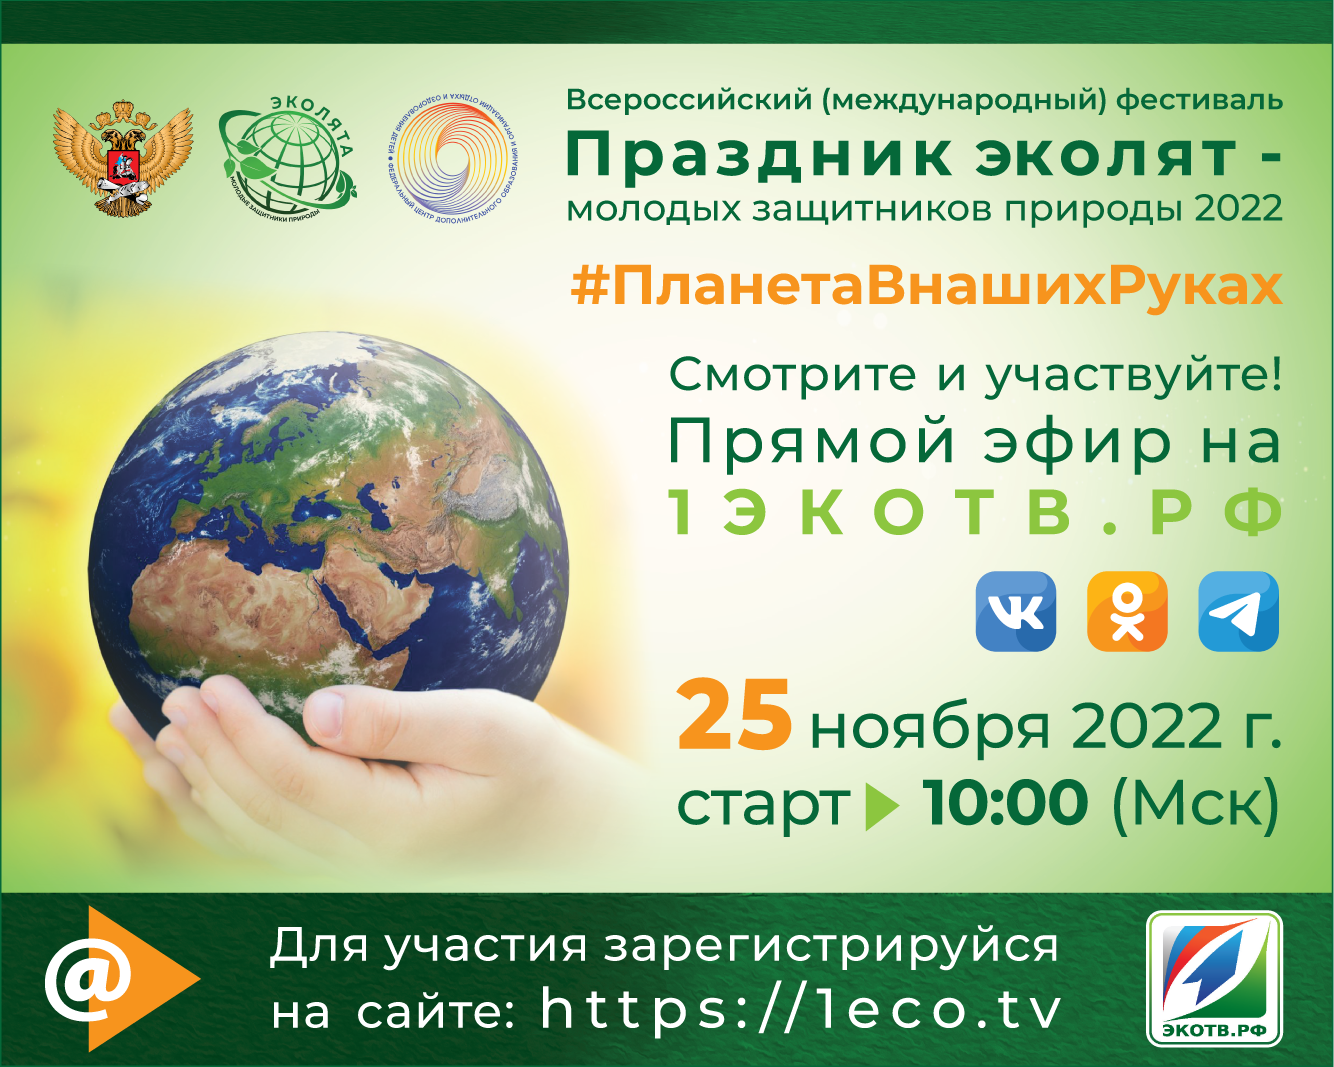 Всероссийский экологический фестиваль детей и молодёжи "Земле жить!" 2022г.